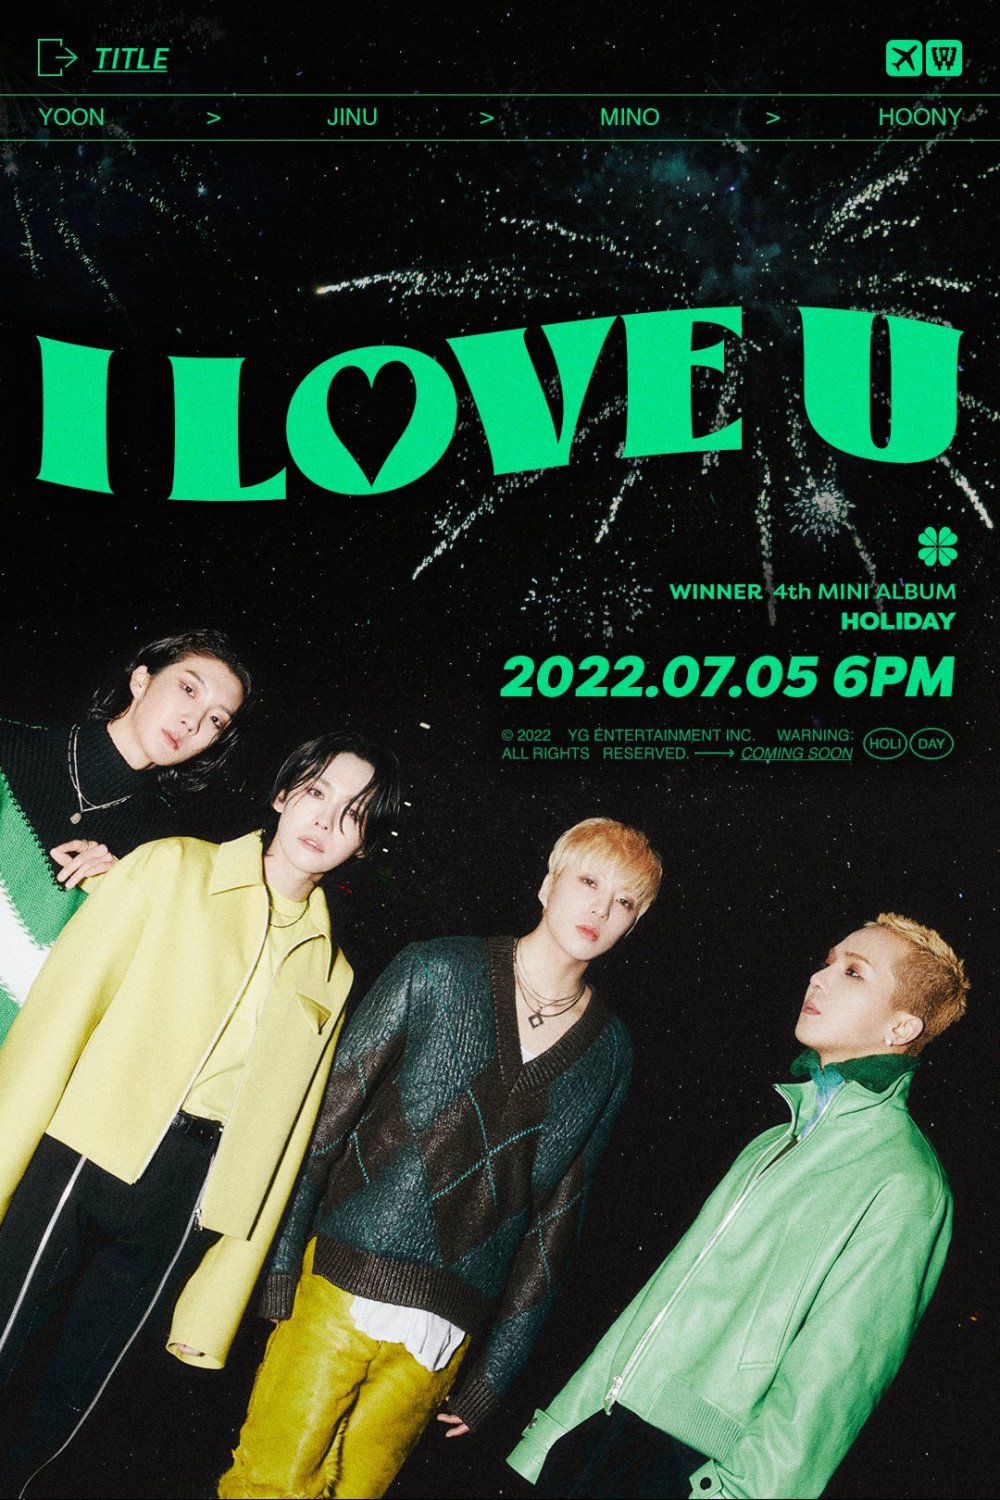 [Камбэк] Winner мини-альбом "HOLIDAY": музыкальный клип "I LOVE U"